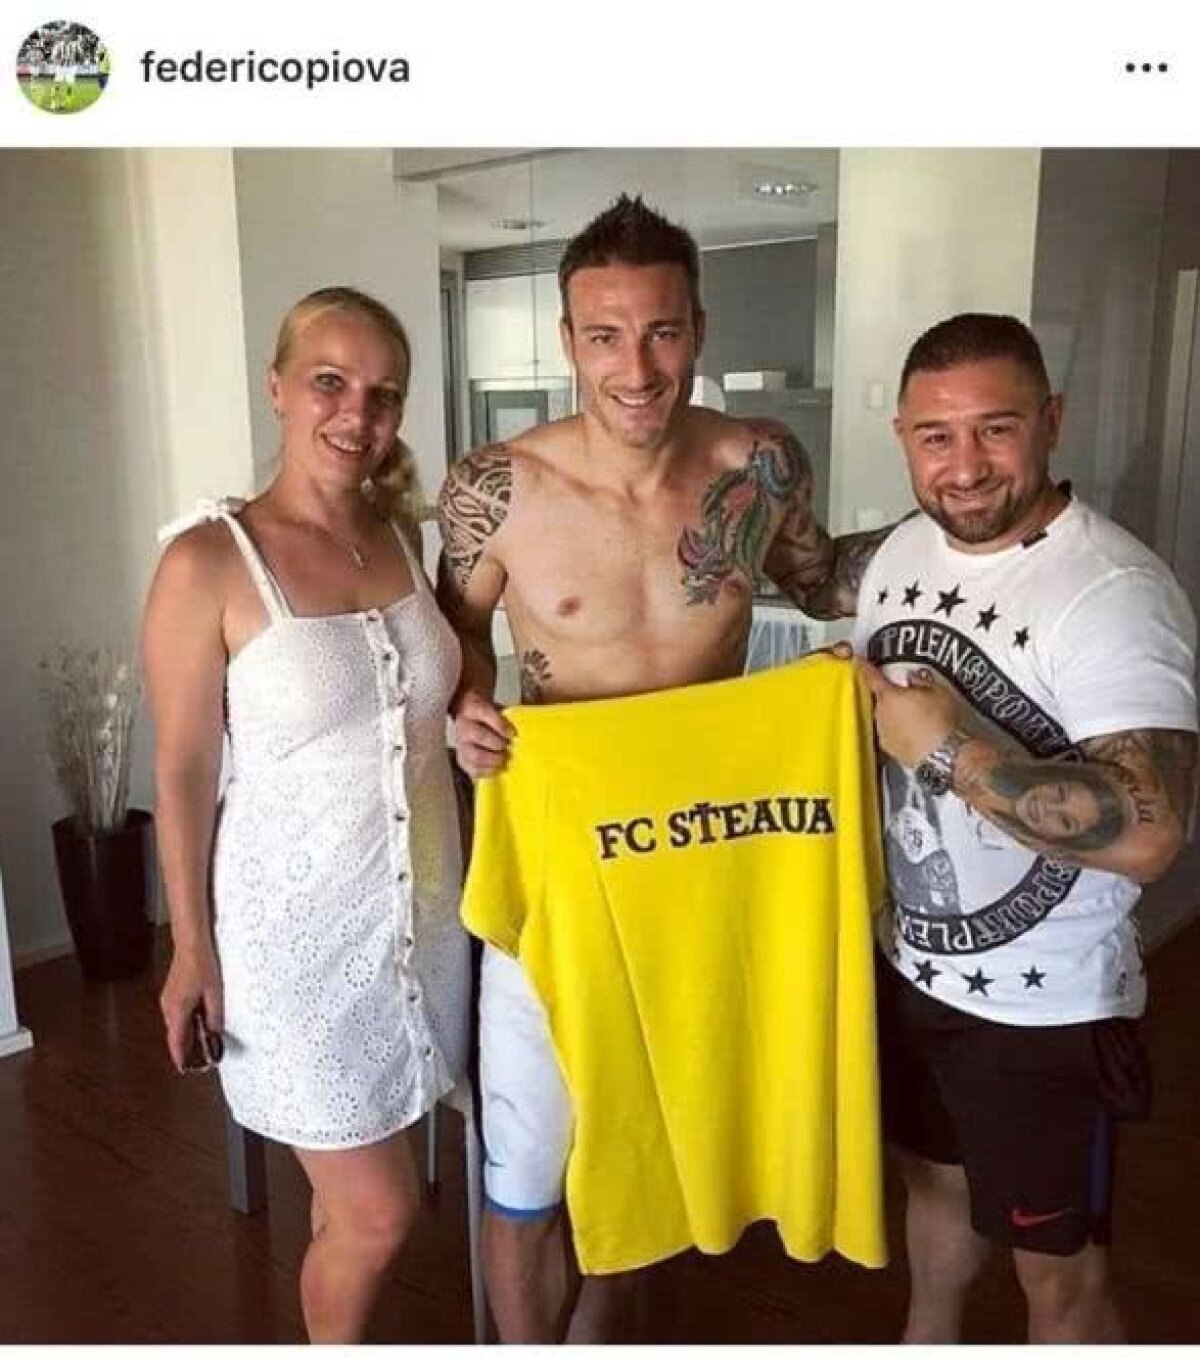 Imaginea misterioasă postată de un fost idol al fanilor roș-albaștri: "Te întorci la Steaua?"